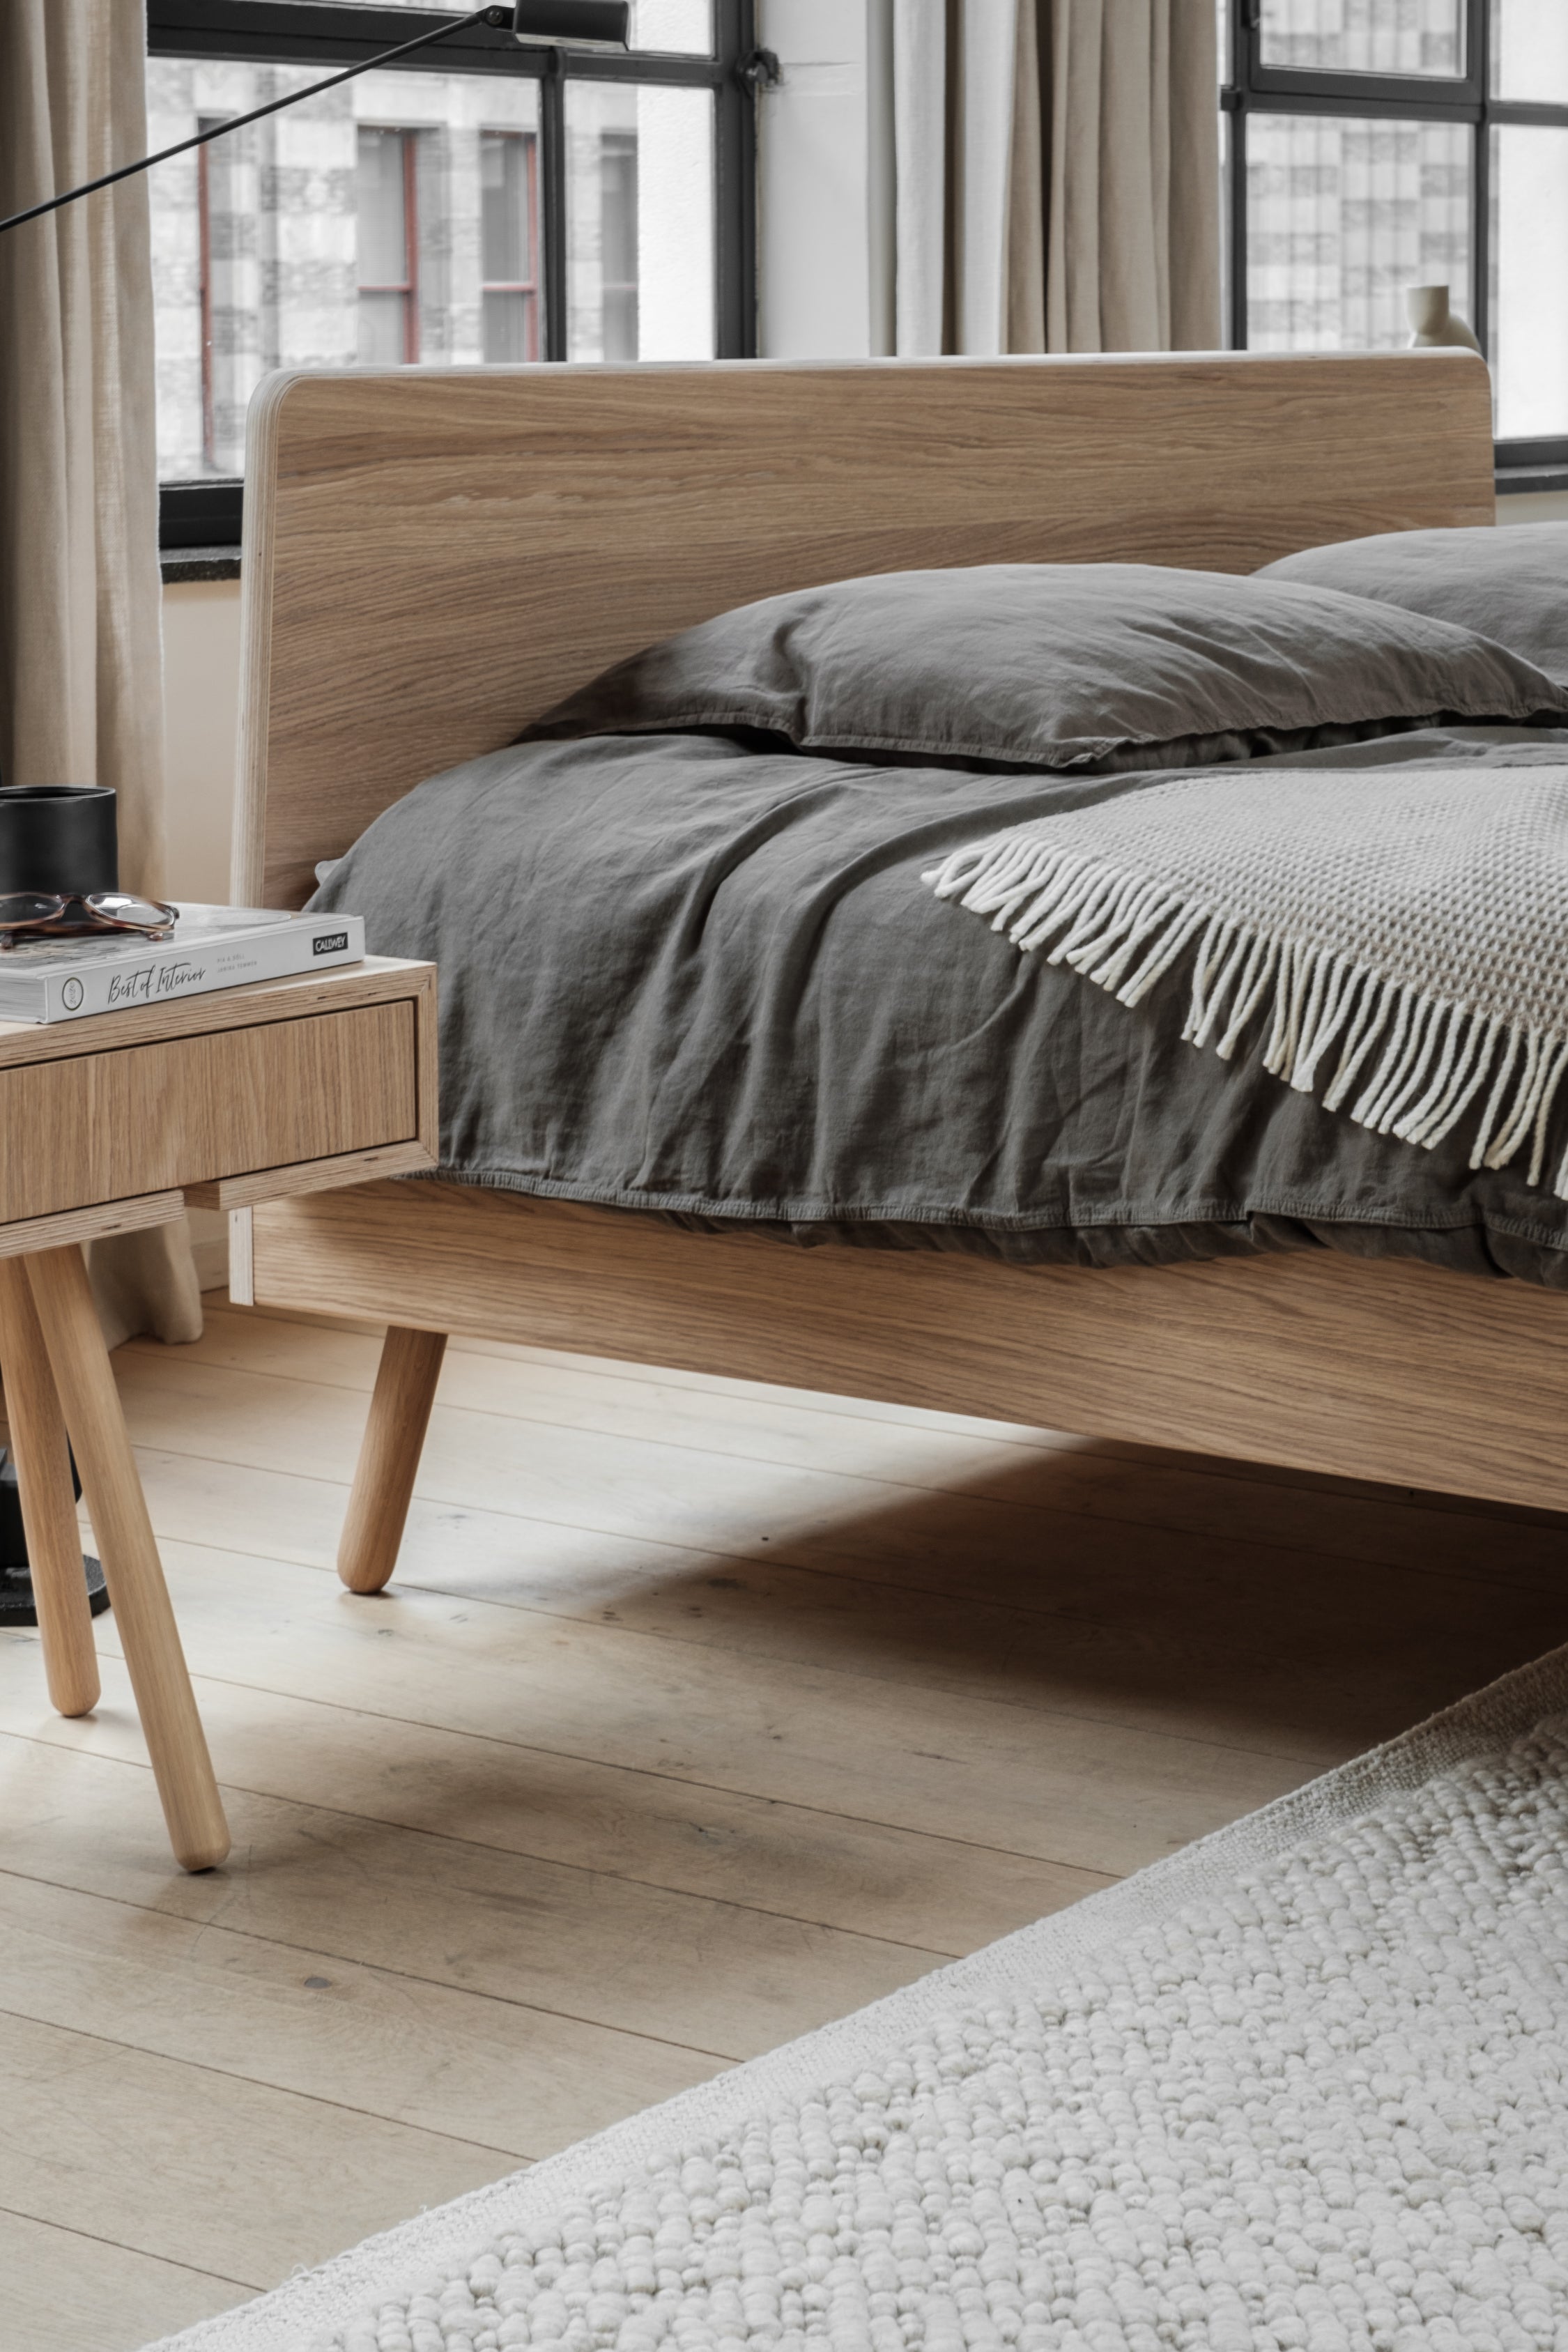 Spreek luid voordeel partij Houten bedframes in minimalistisch designs - Loof